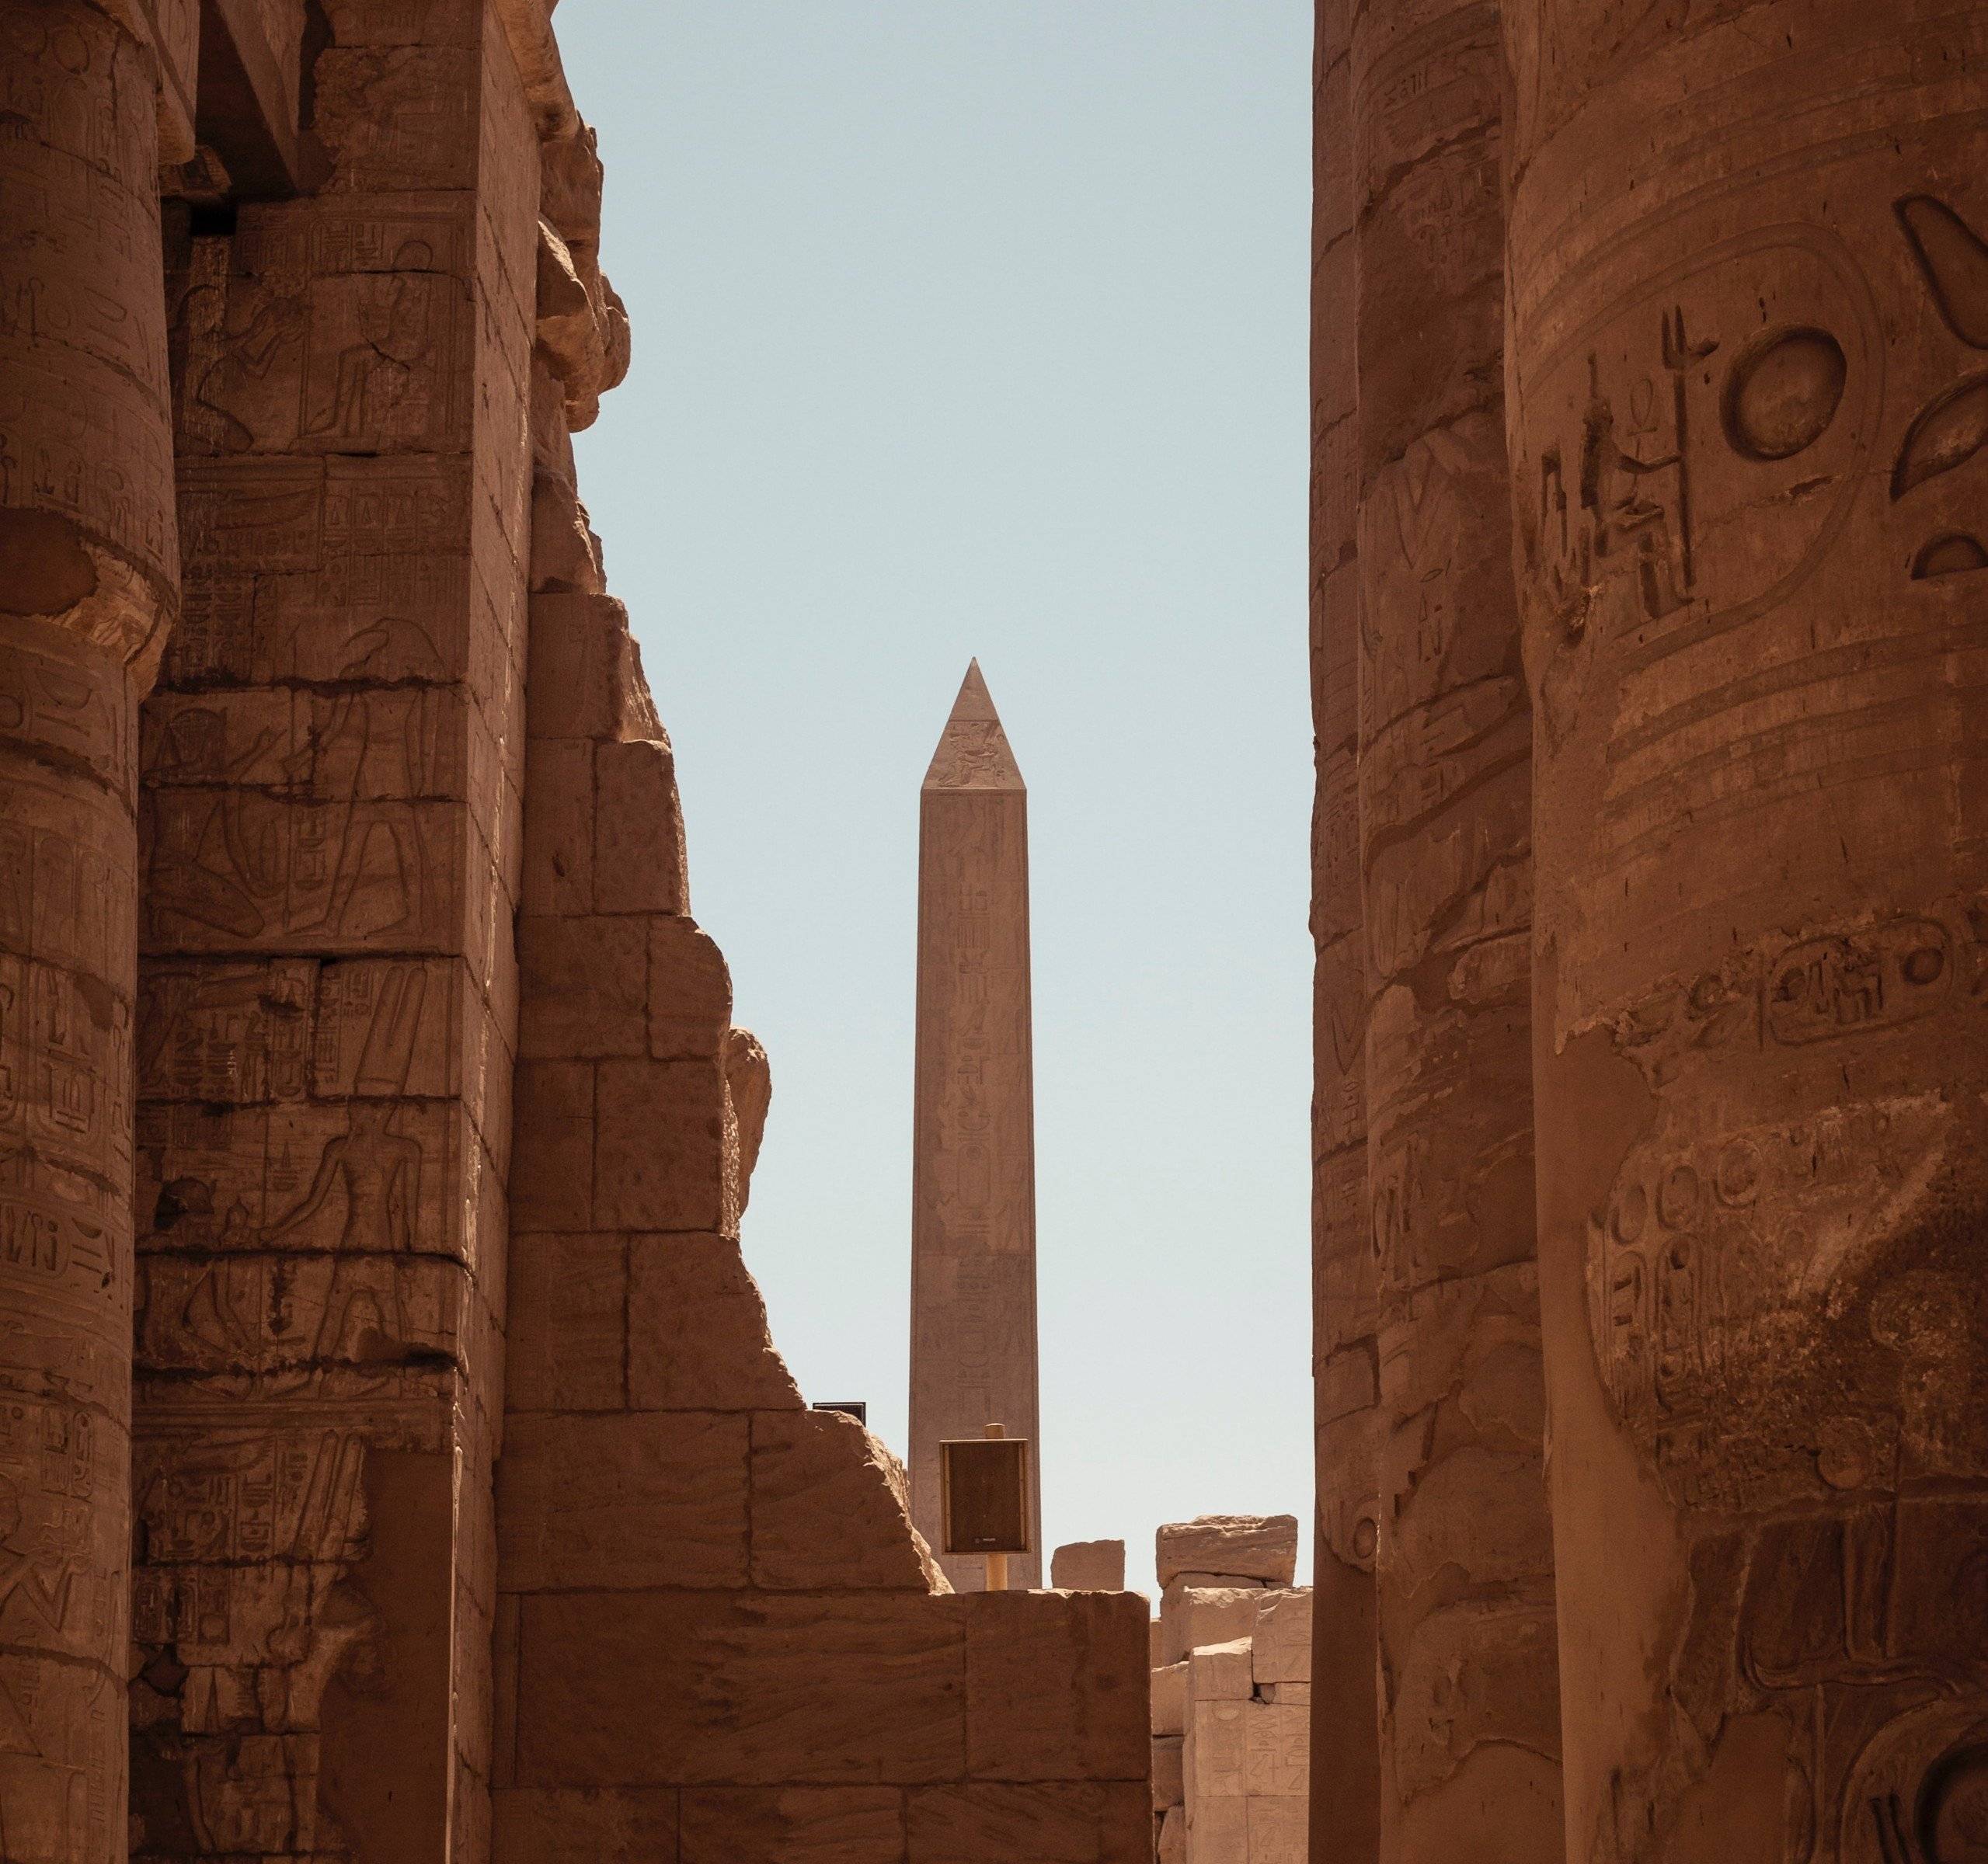 Karnak et Louxor